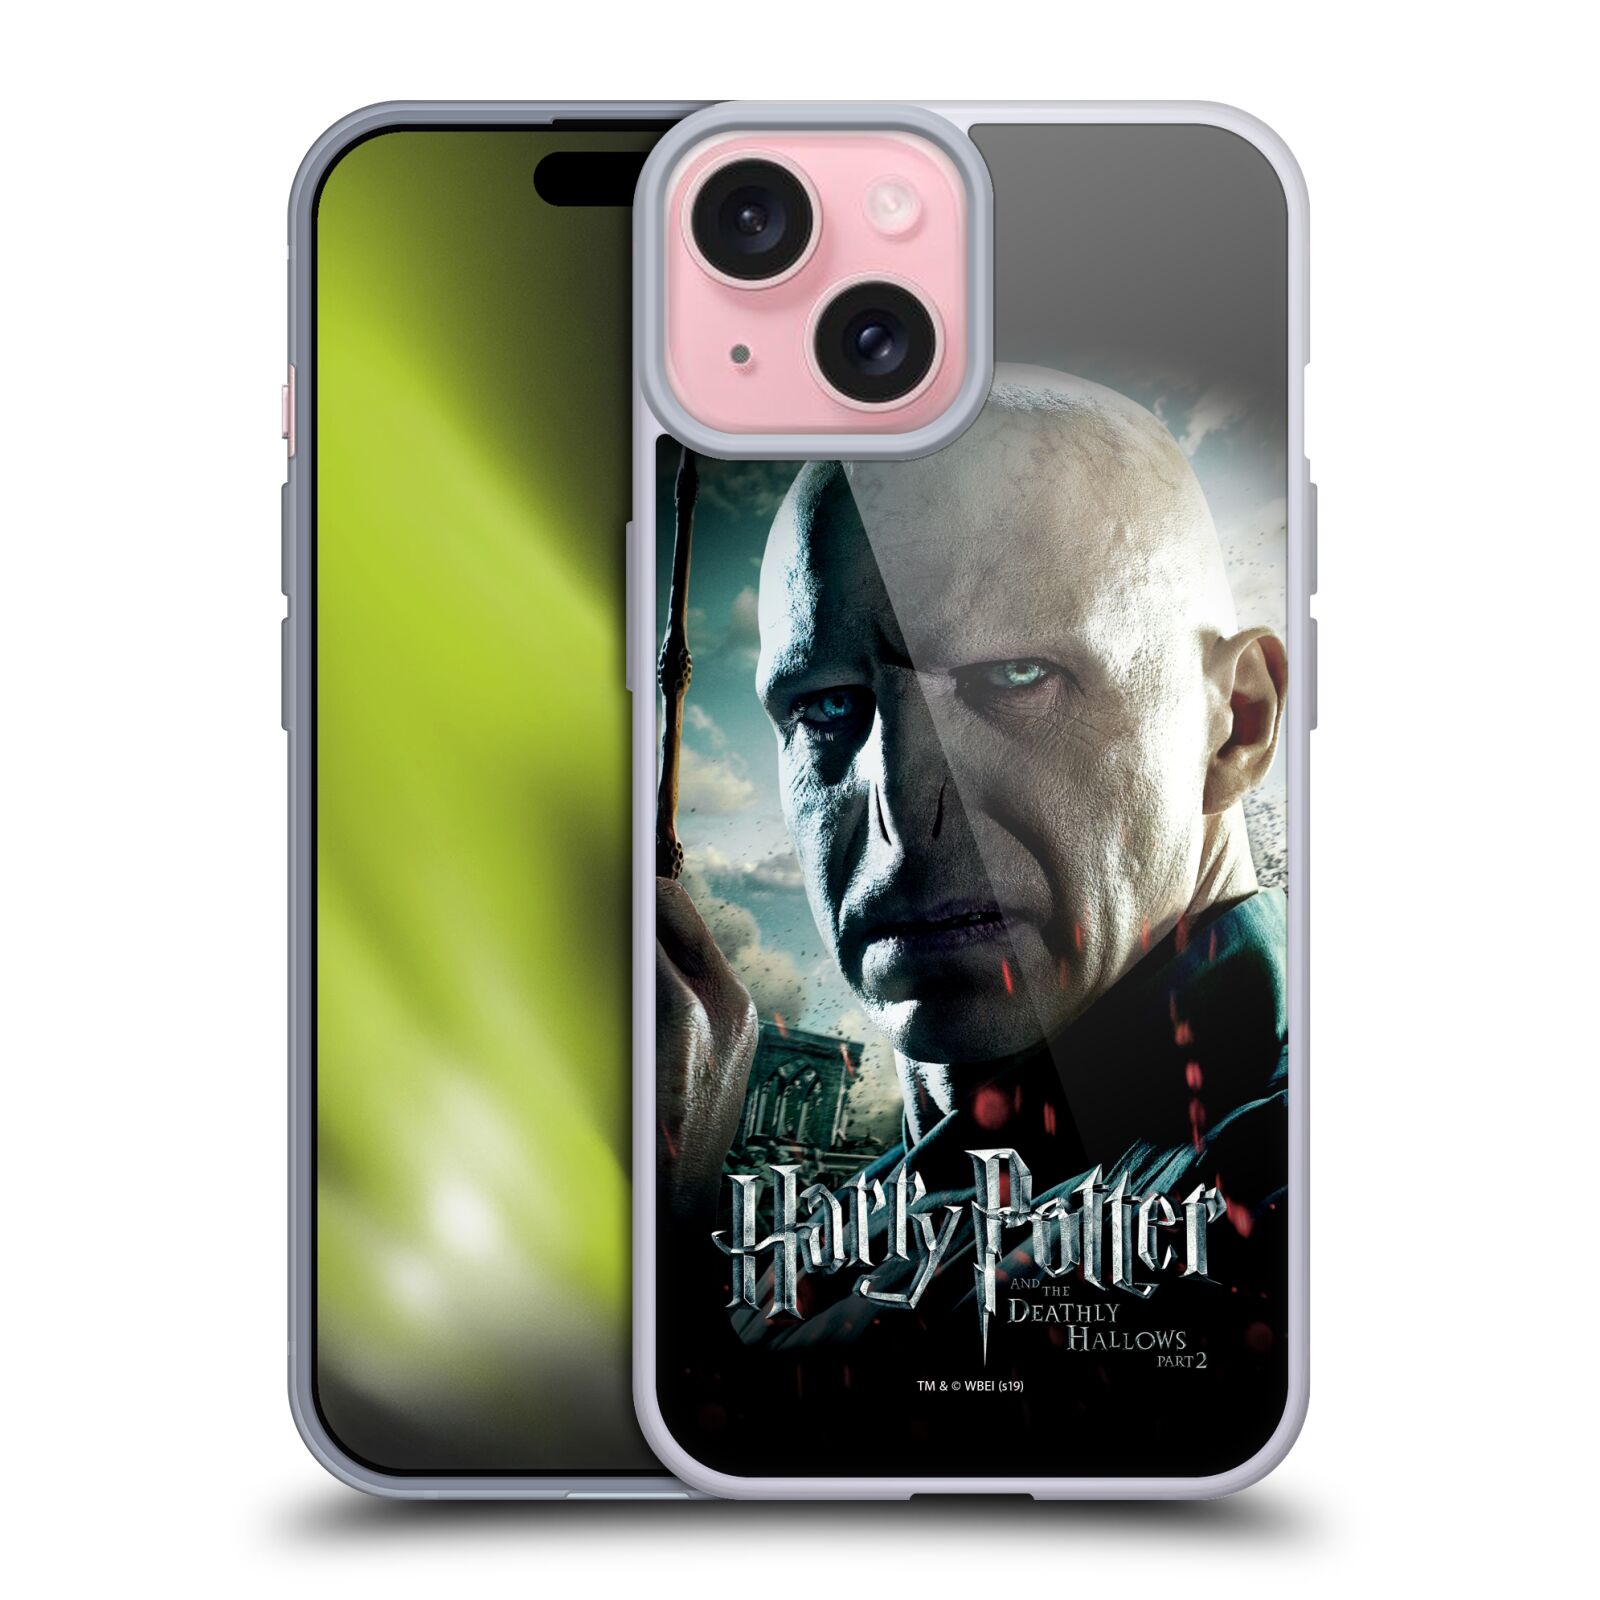 Silikonové lesklé pouzdro na mobil Apple iPhone 15 - Harry Potter a Relikvie smrti - Lord Voldemort (Silikonový lesklý kryt, obal, pouzdro na mobilní telefon Apple iPhone 15 s licencovaným motivem Harry Potter a Relikvie smrti - Lord Voldemort)